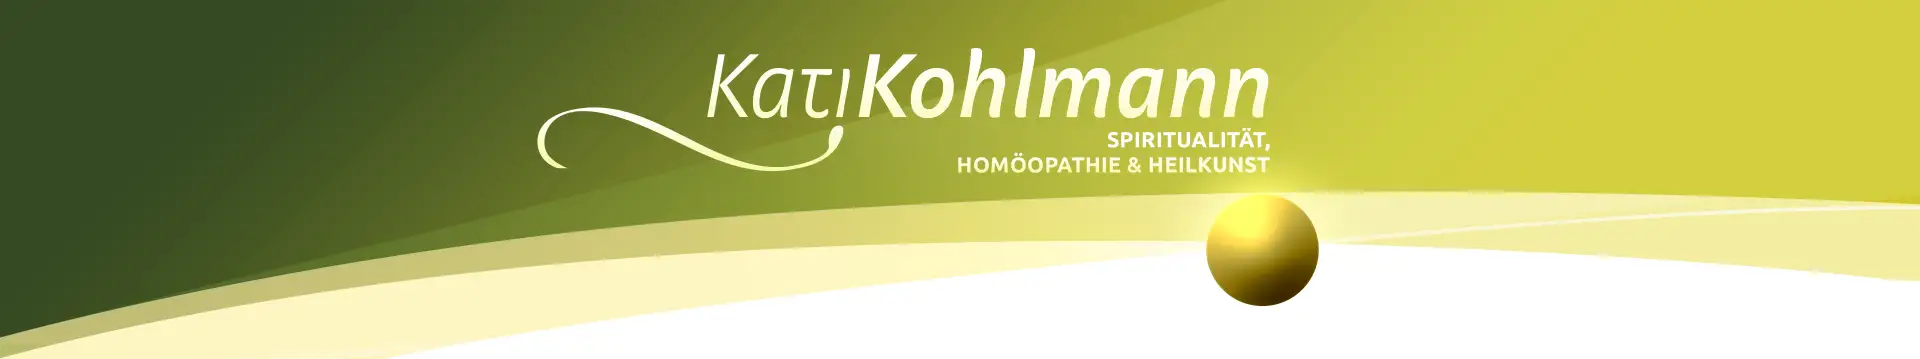 Kati Kohlmann - Homöopathie und Heilkunst